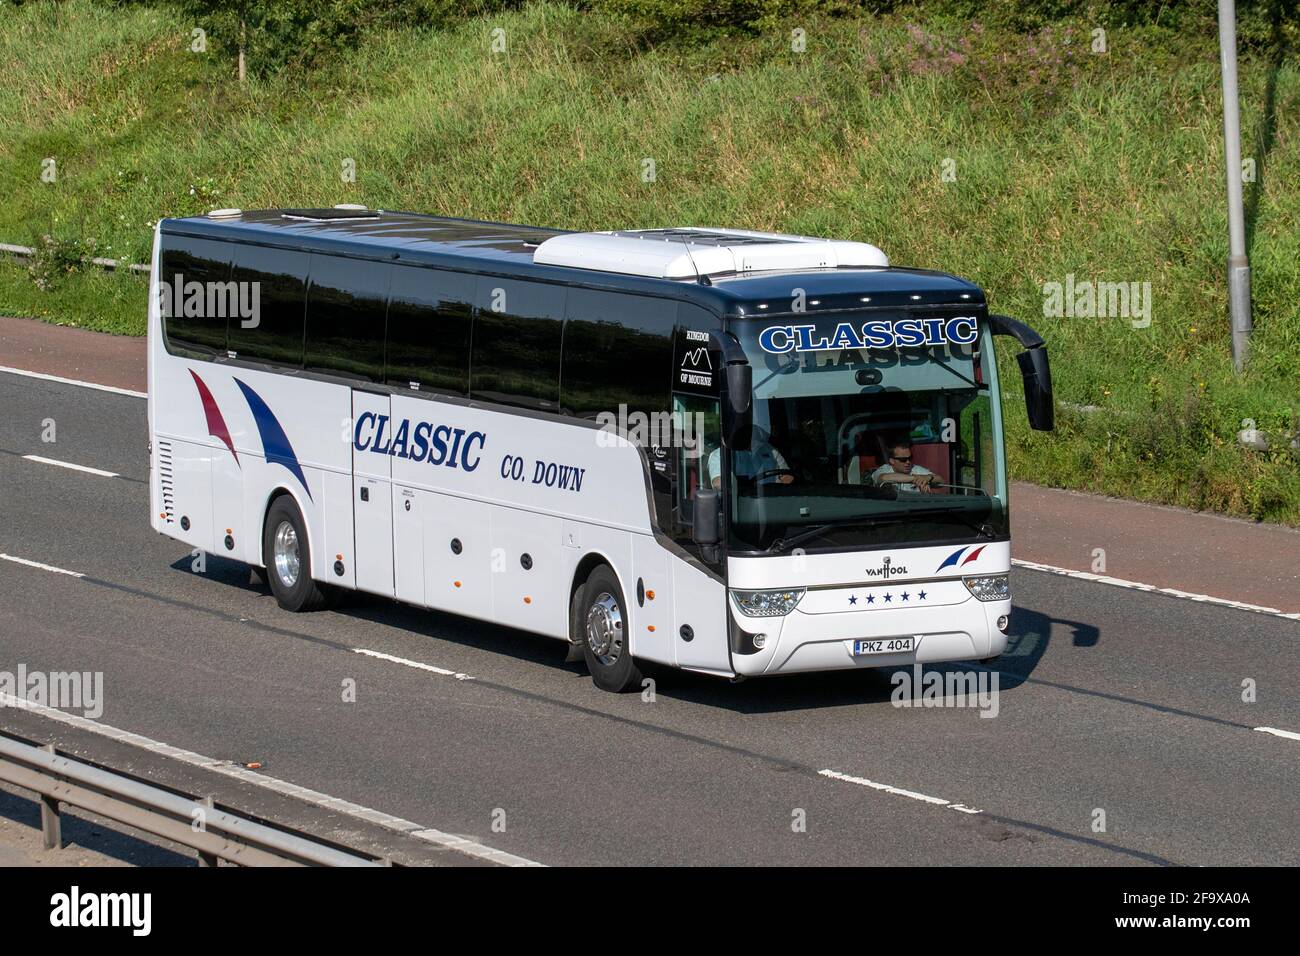 IRELAND Co. Down Classic Van Hool Coach tour, rutas de autobuses irlandeses, interciudades, alquiler privado, excursiones de un día y viajes de vacaciones de los pasajeros en el M6 en Manchester, Reino Unido Foto de stock